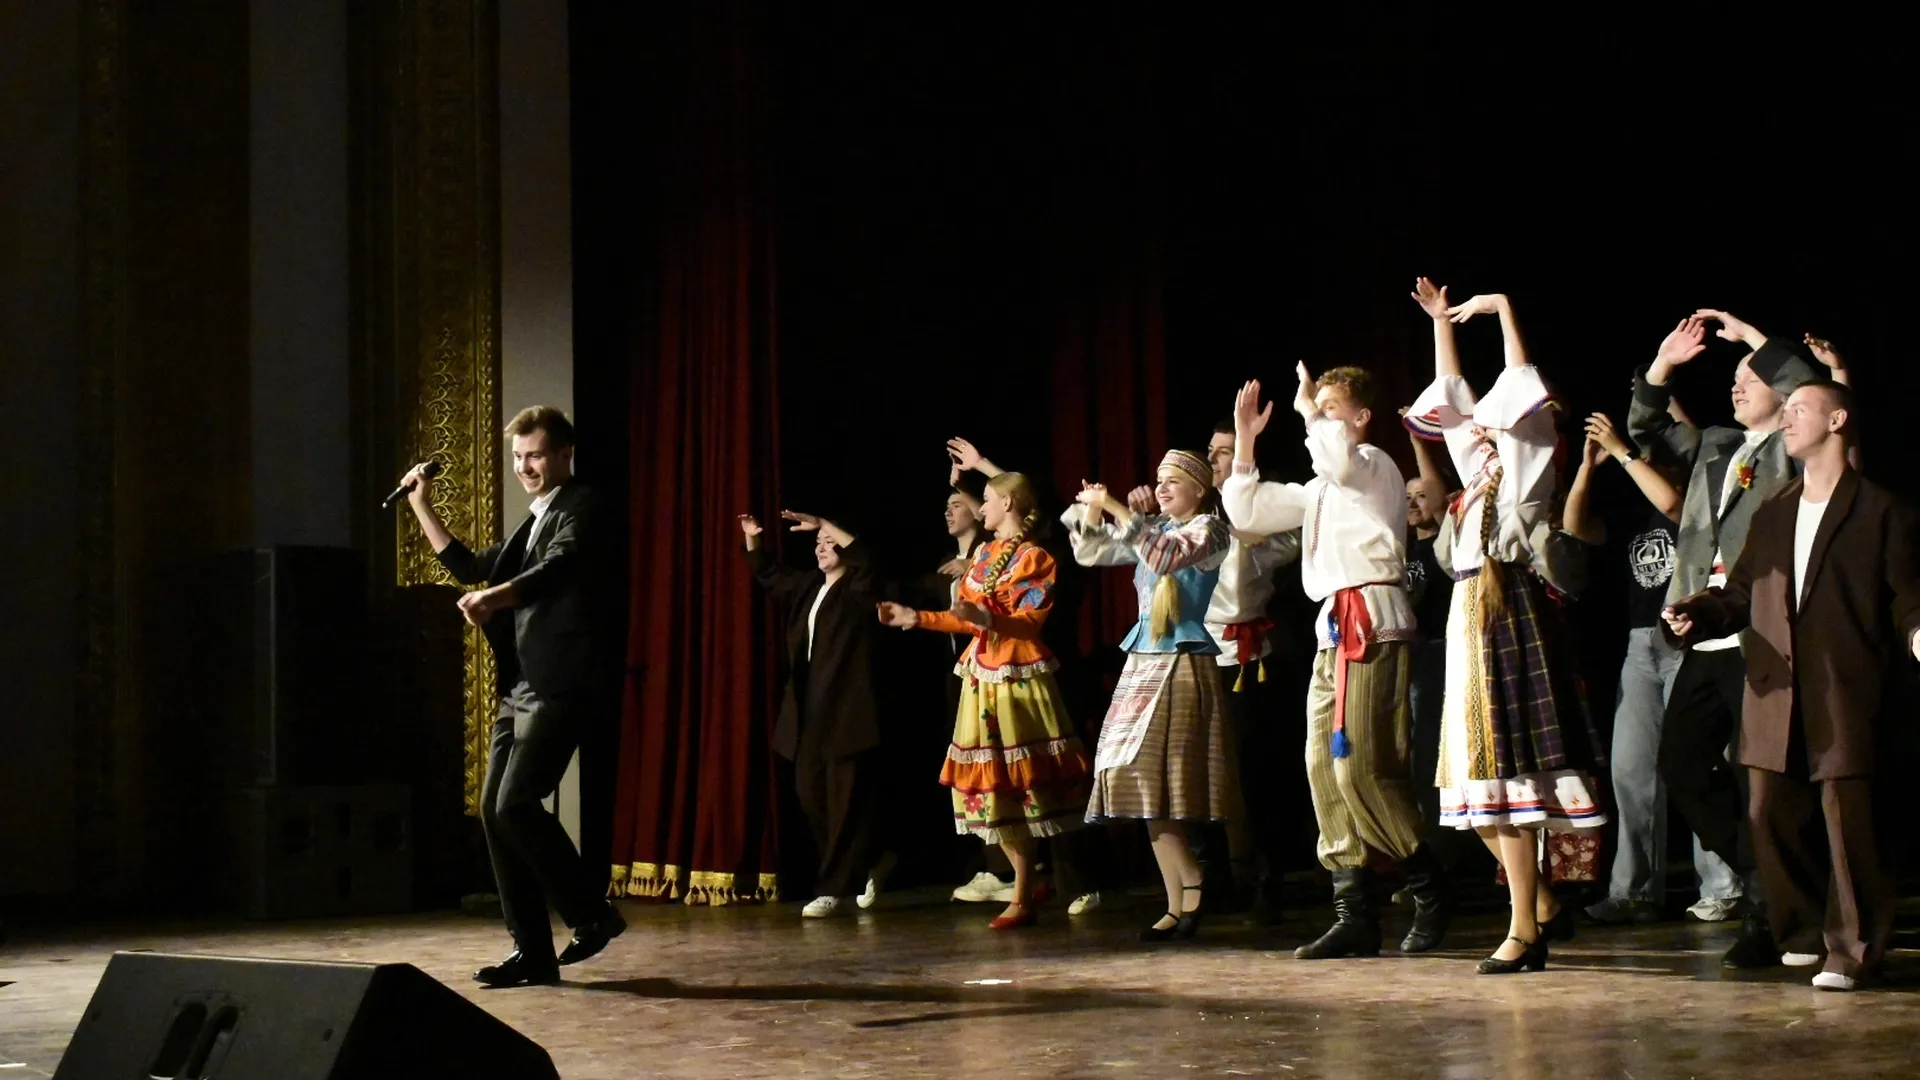 Студенты из Химок выступили с концертом в Абхазии для детей с ОВЗ